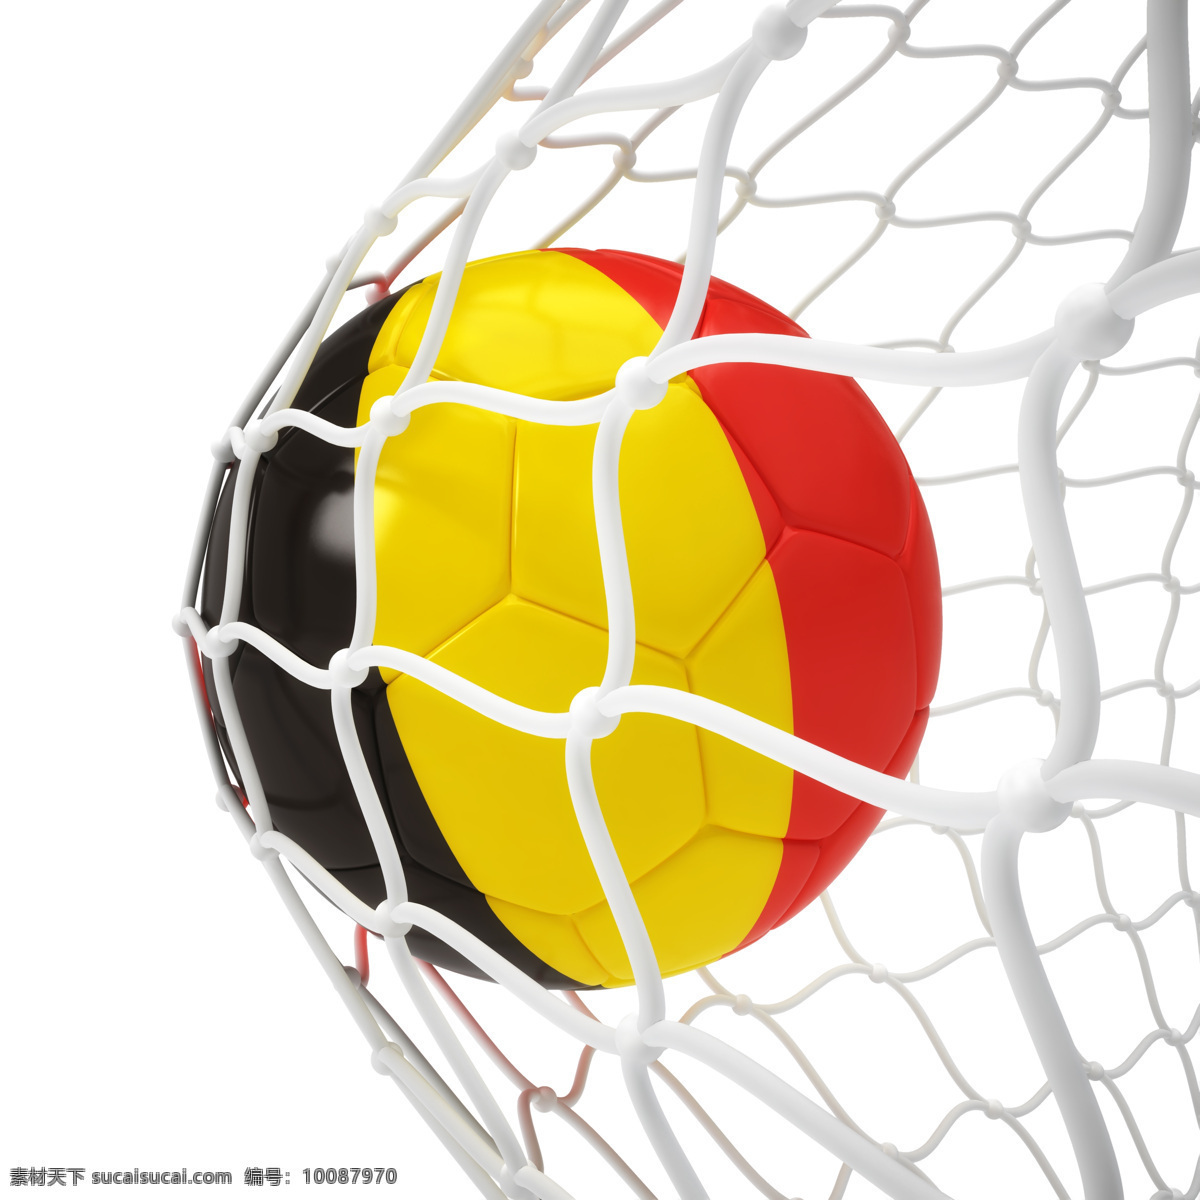 比利时 国旗 足球 比利时足球 进球 球门 足球比赛 赛事 足球运动 体育运动 体育项目 生活百科